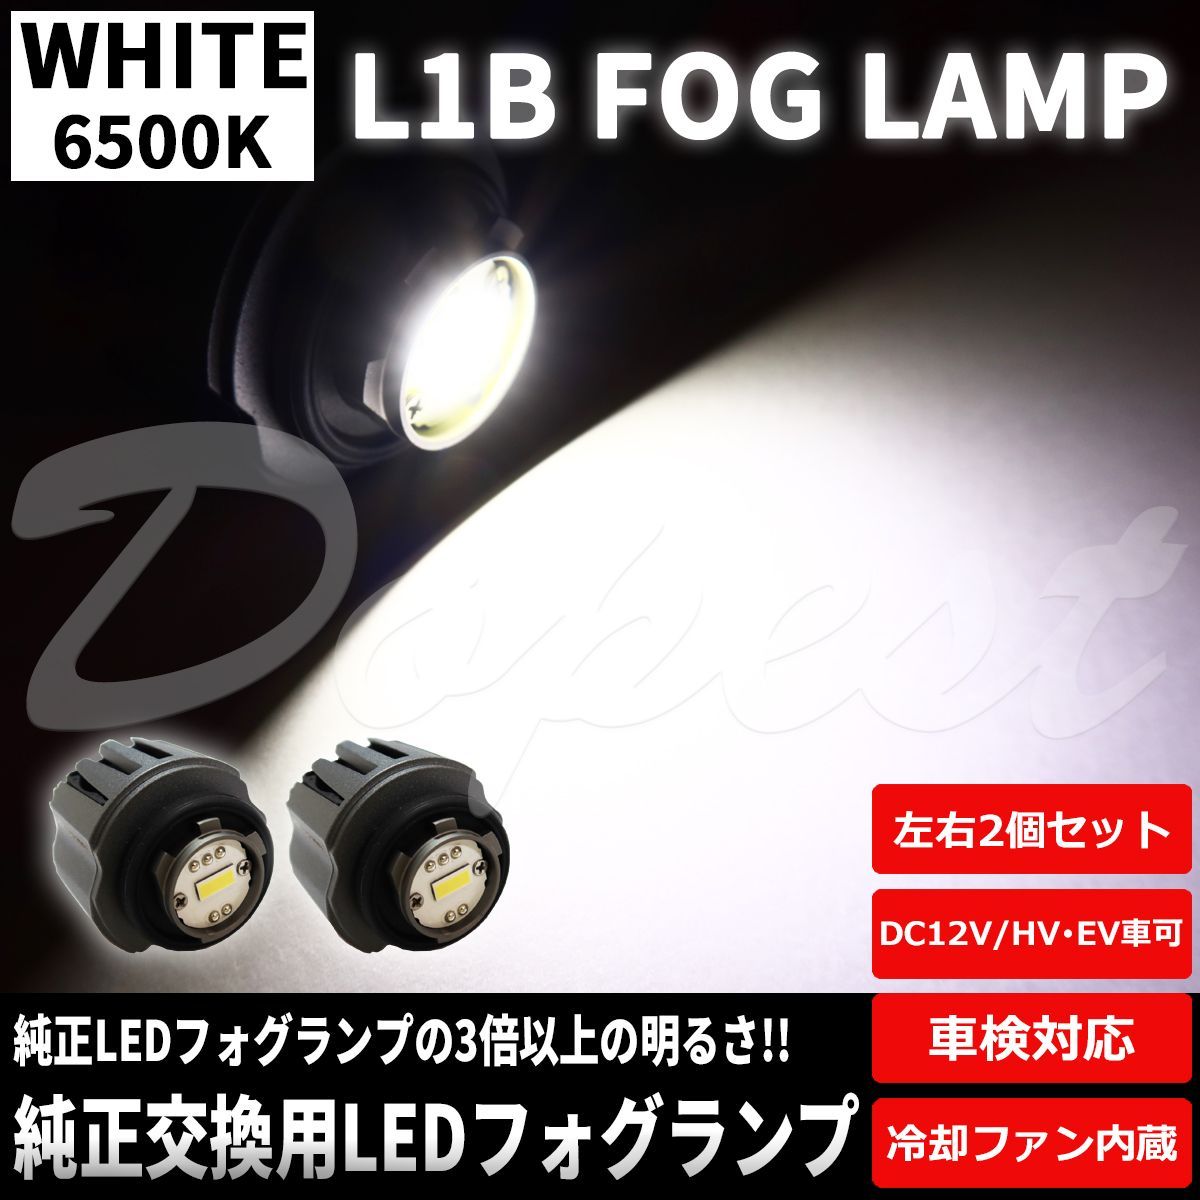 純正LEDフォグランプ交換 ホワイト L1B 純正同形状 ポン付け